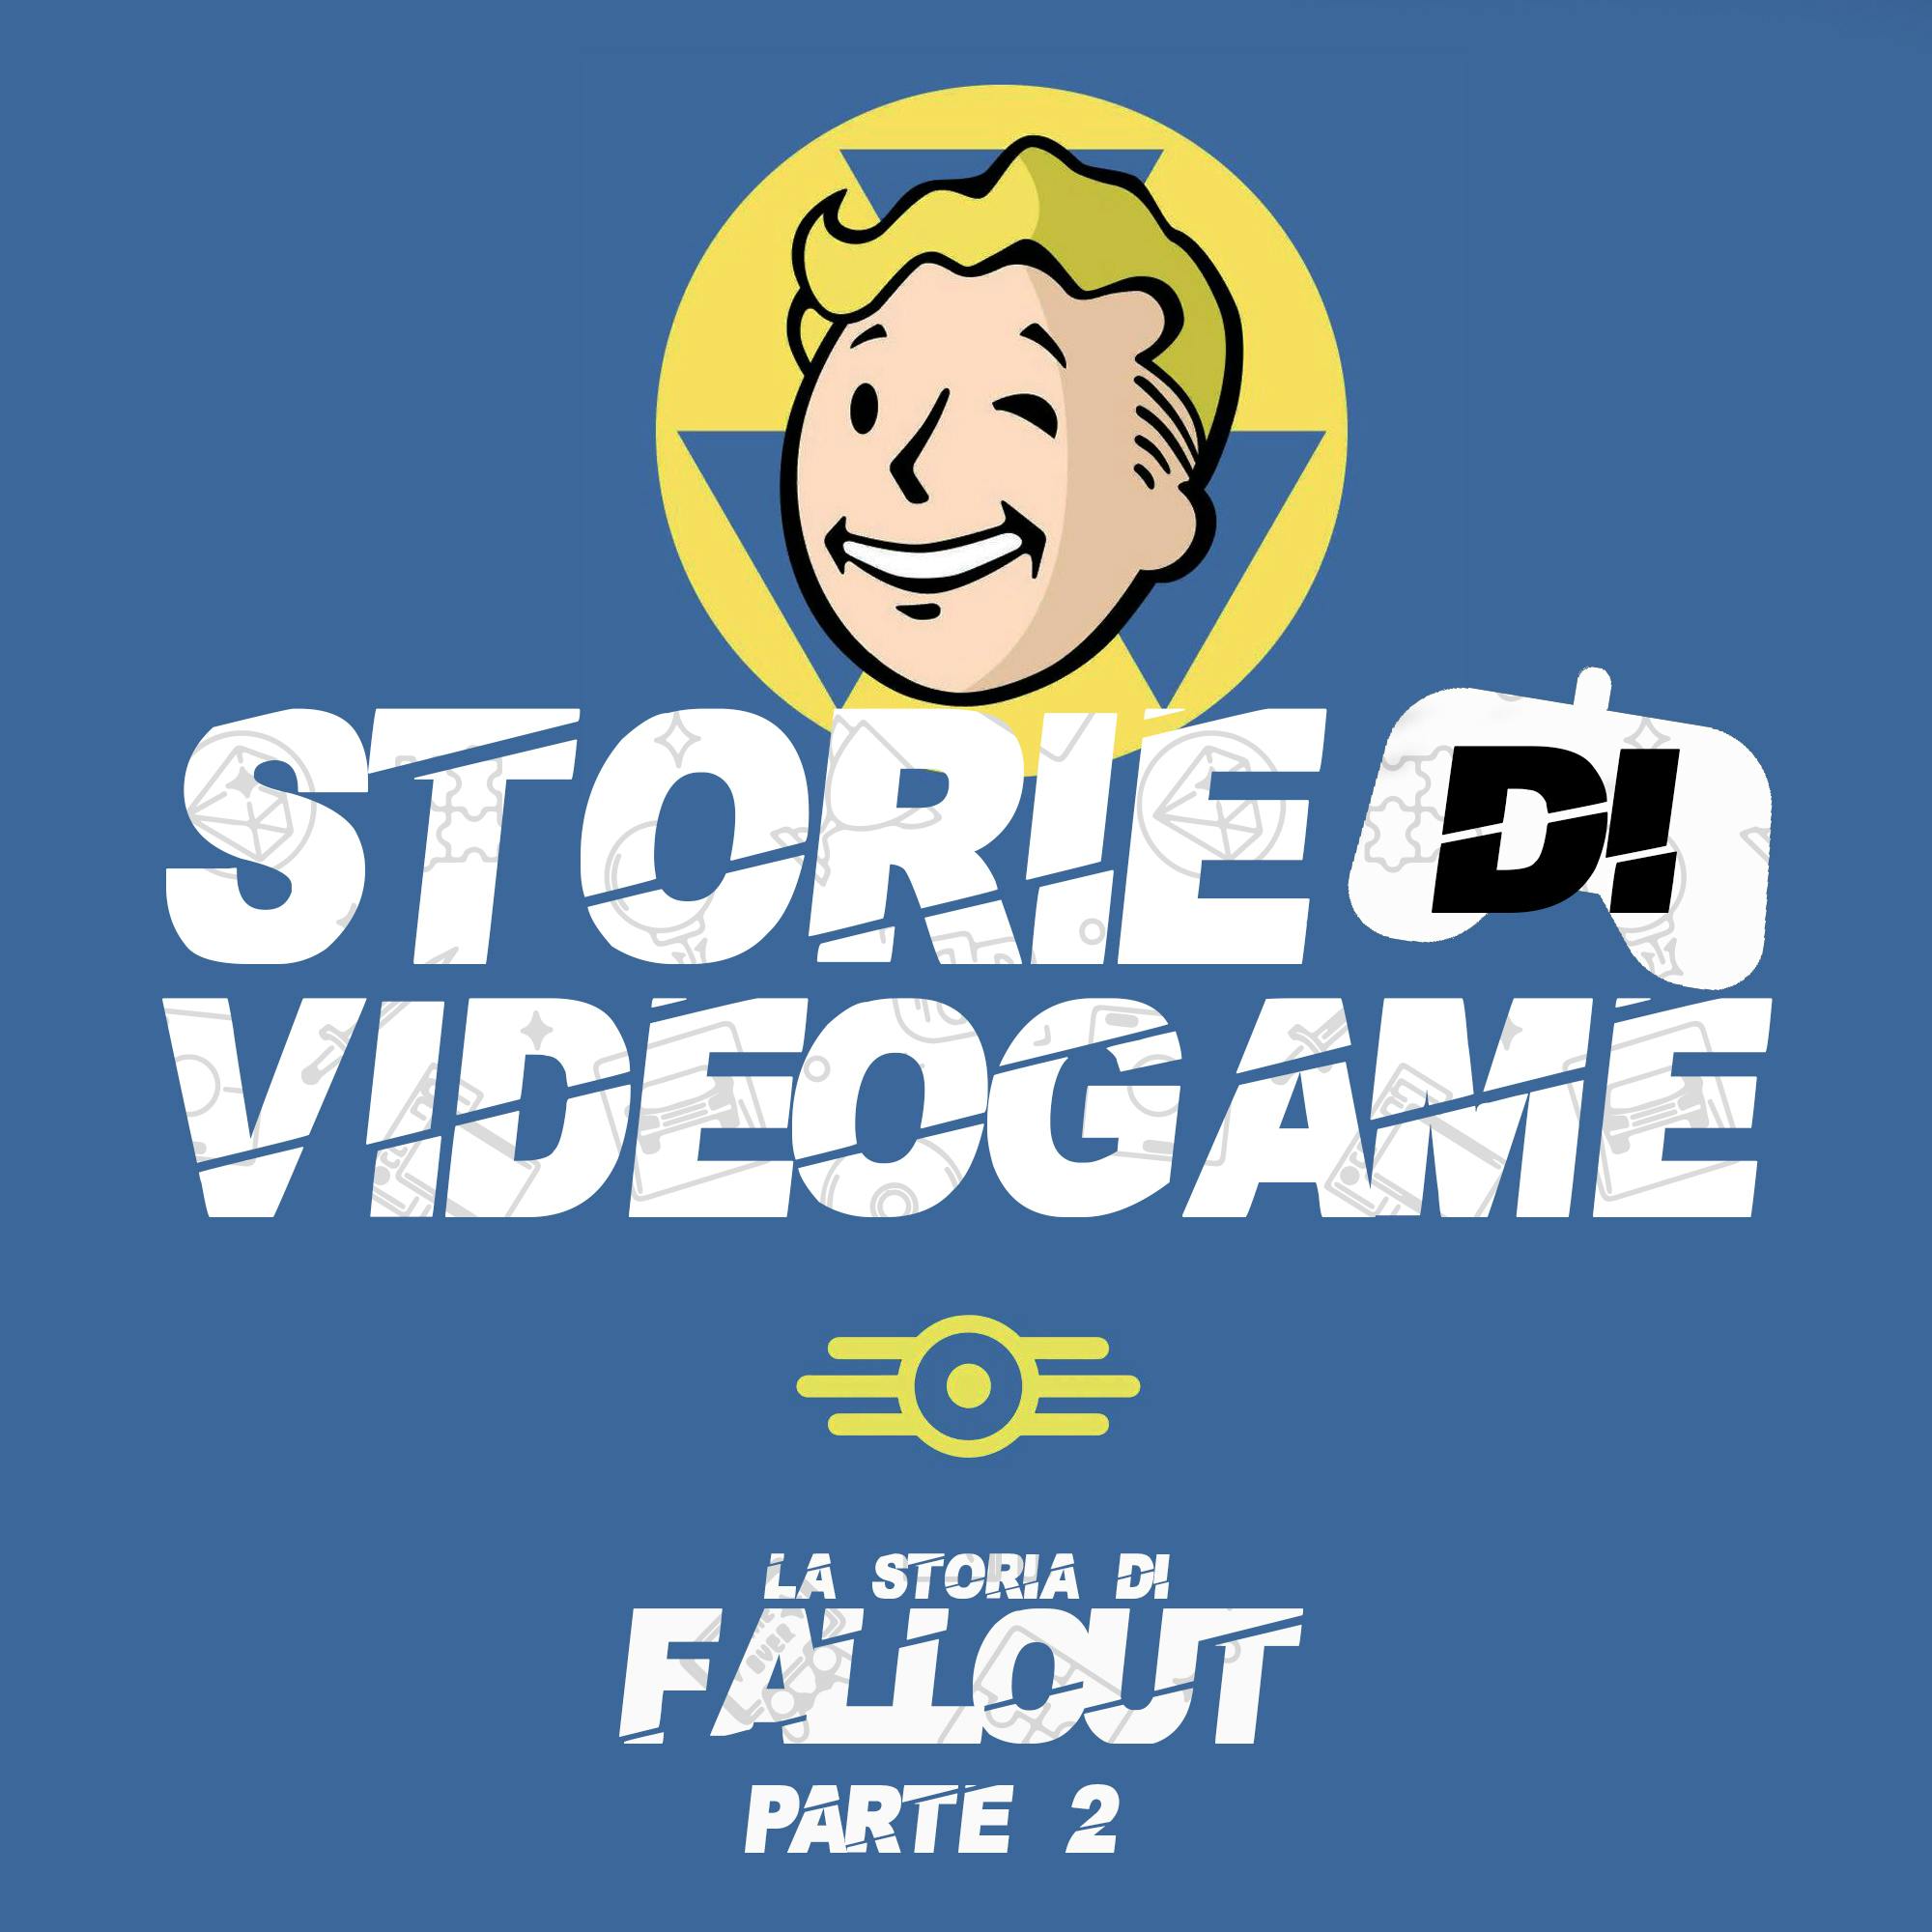 La storia di Fallout Pt. 2 - Rompere l'atomo